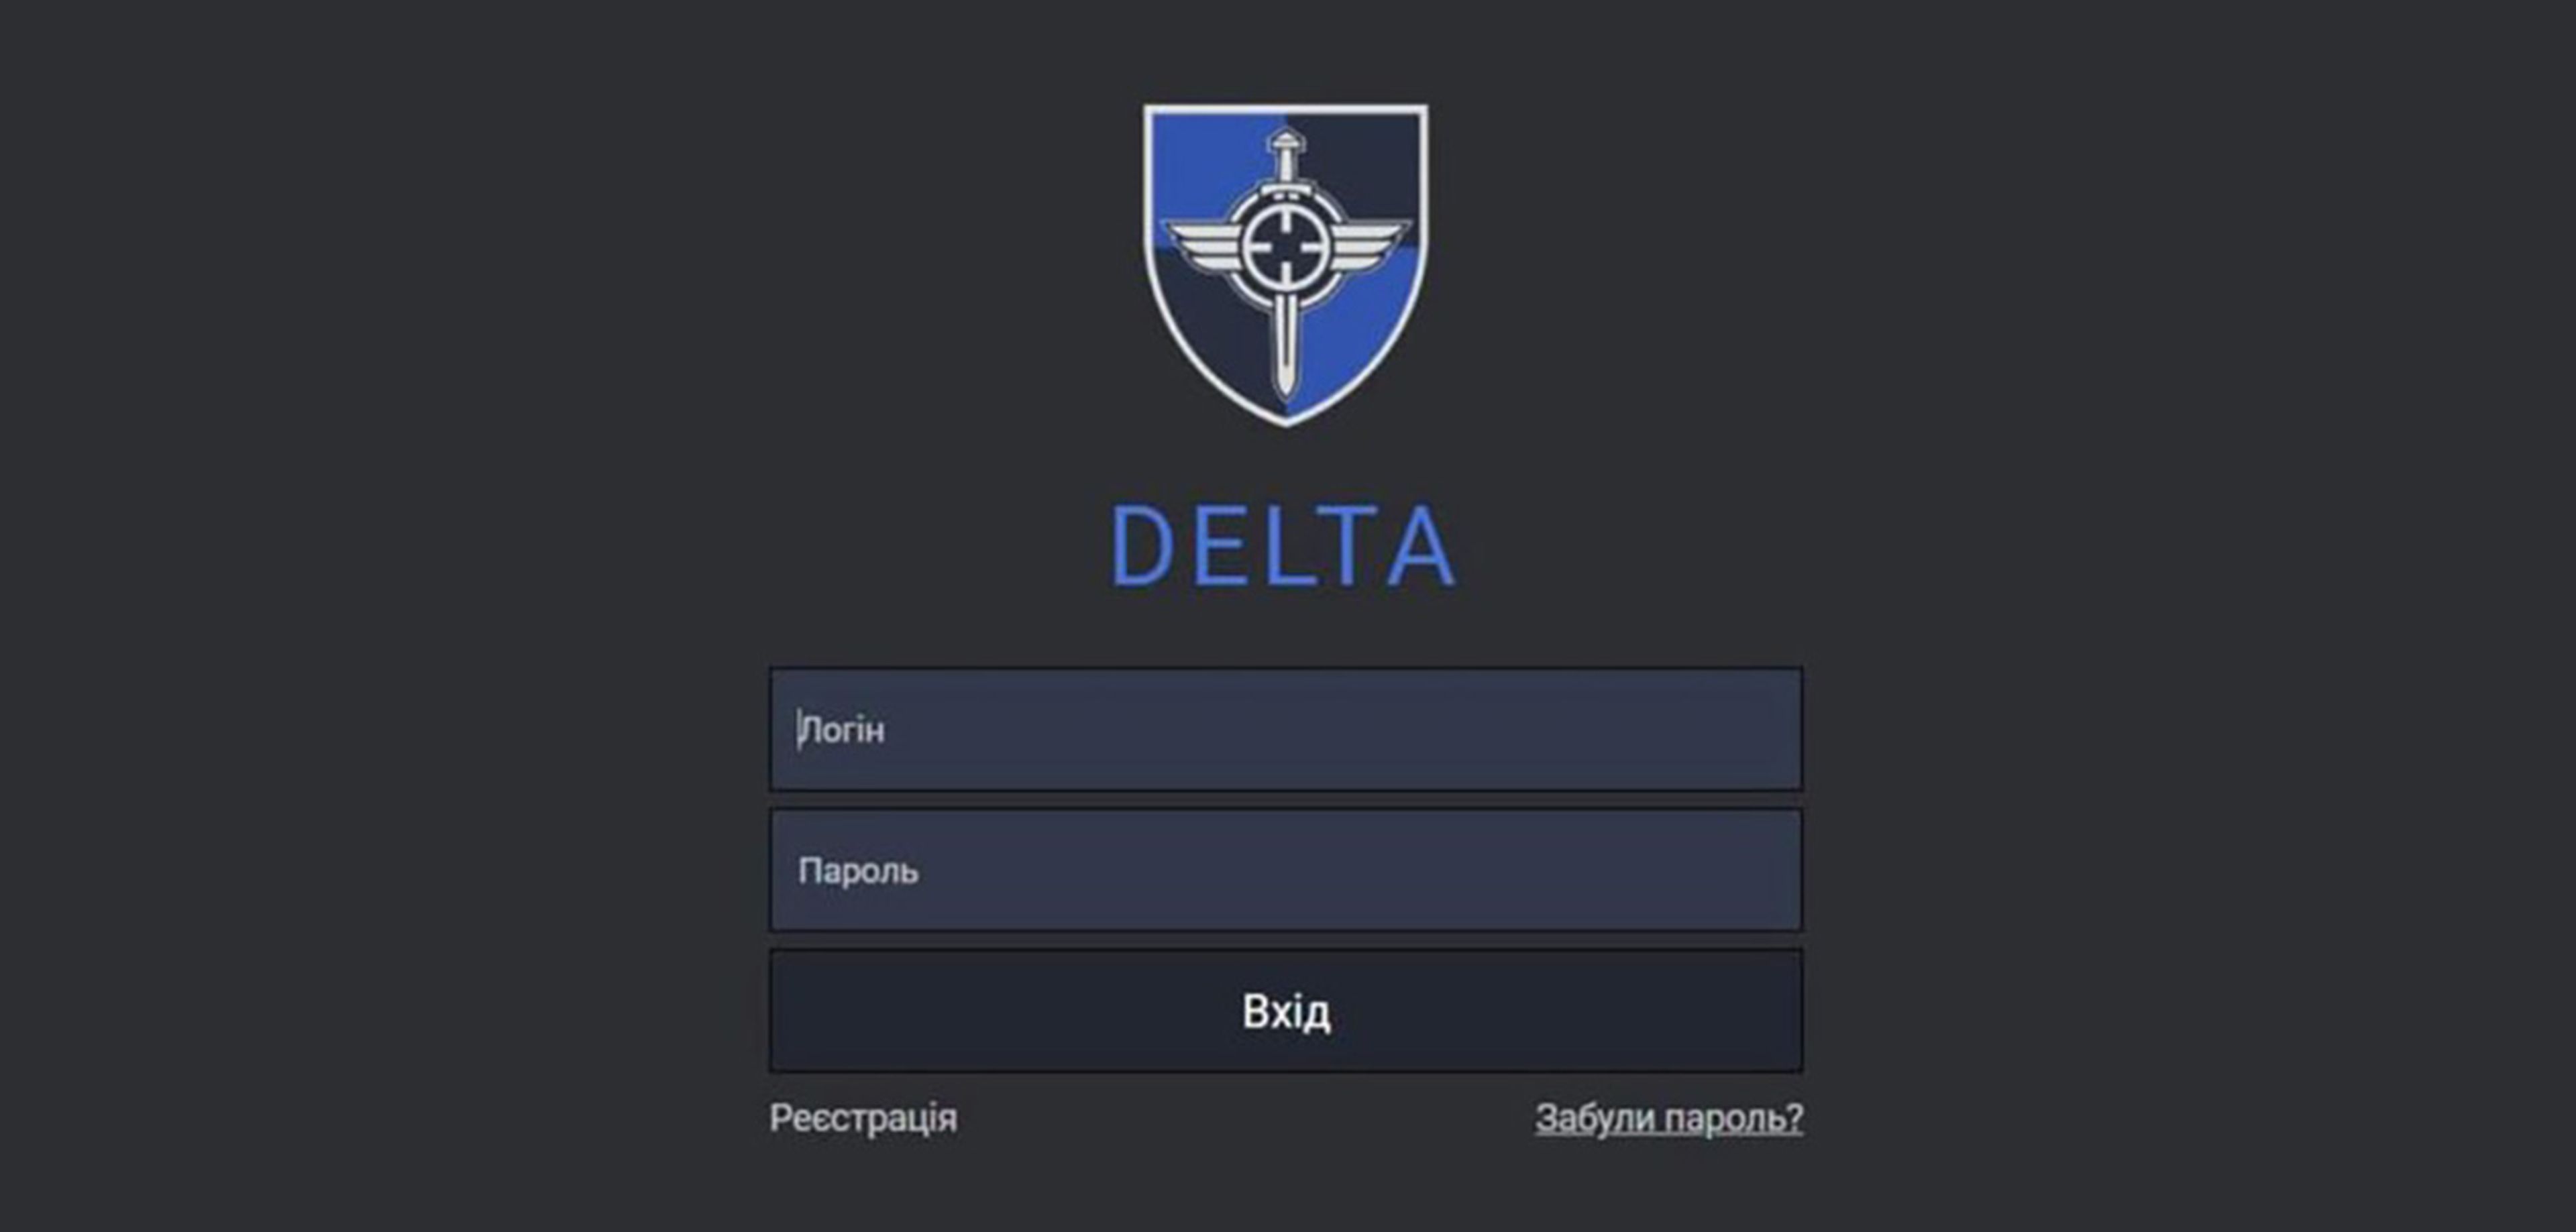 Cada usuario que accede a Delta debe autenticarse individualmente.